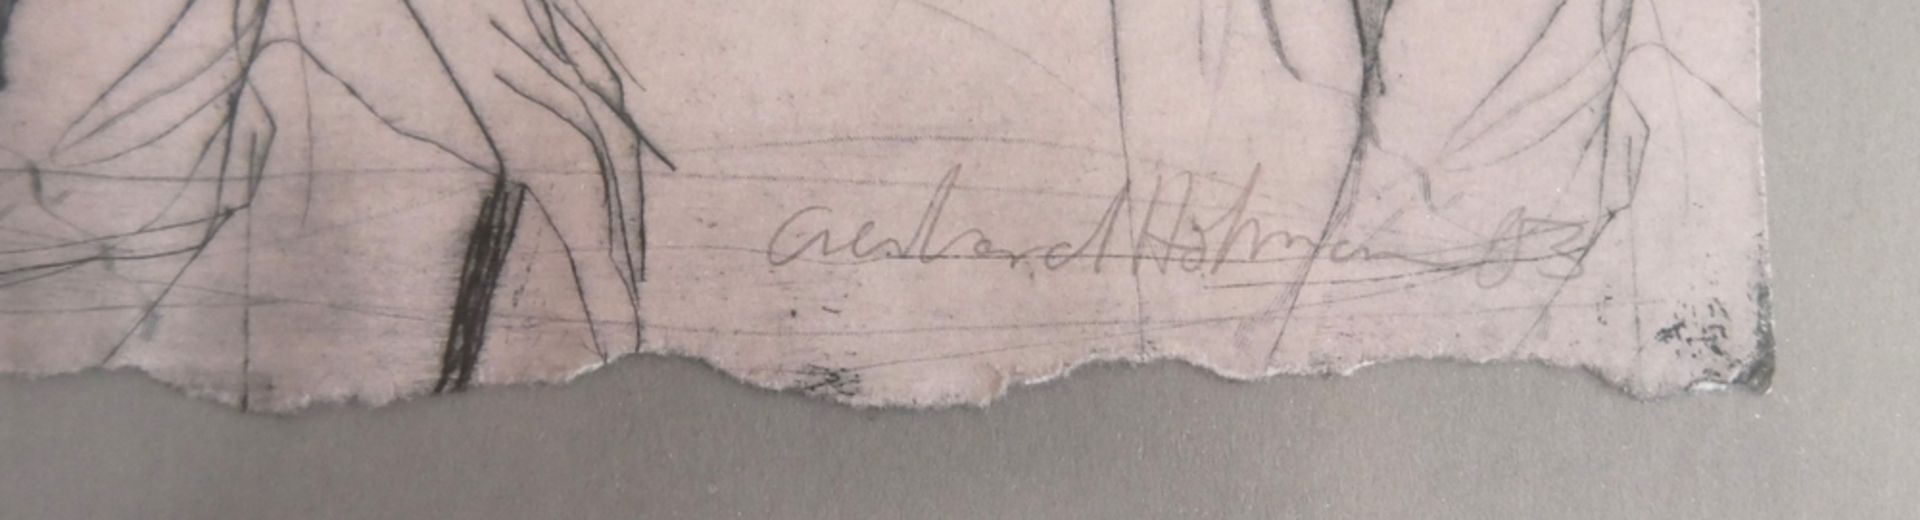 Hofmann. Kaltnadelradierung "2 Damen mit Hut", rechts unten Signiert Hofmann. Blatt 1/30, hinter - Bild 2 aus 2